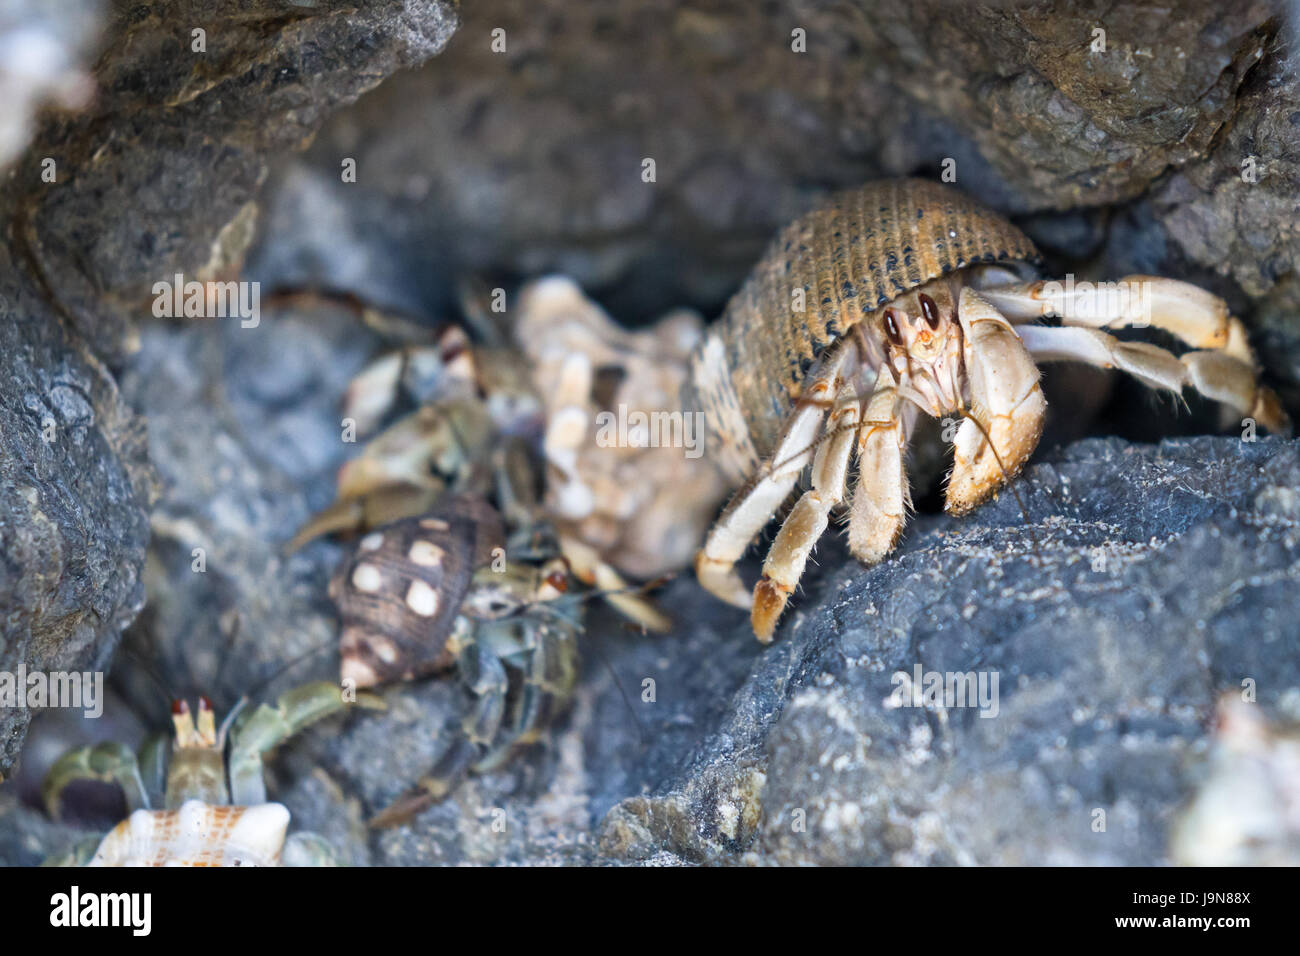 Gruppo di paguri in una piccola grotta o foro in una roccia in una spiaggia in Costa Rica Foto Stock